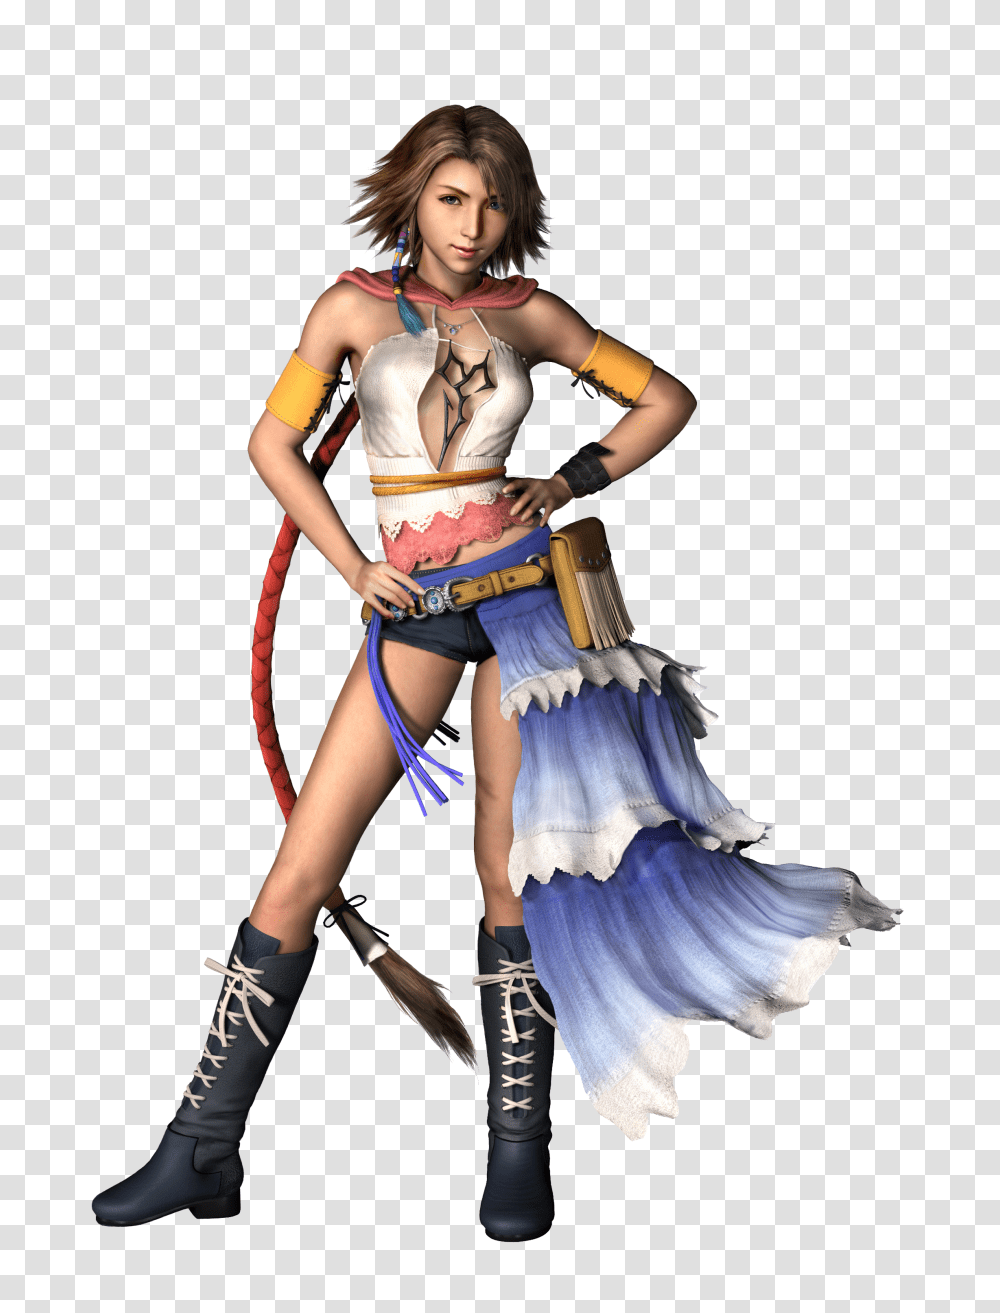 Final Fantasy Final Fantasy Images Transparent Png